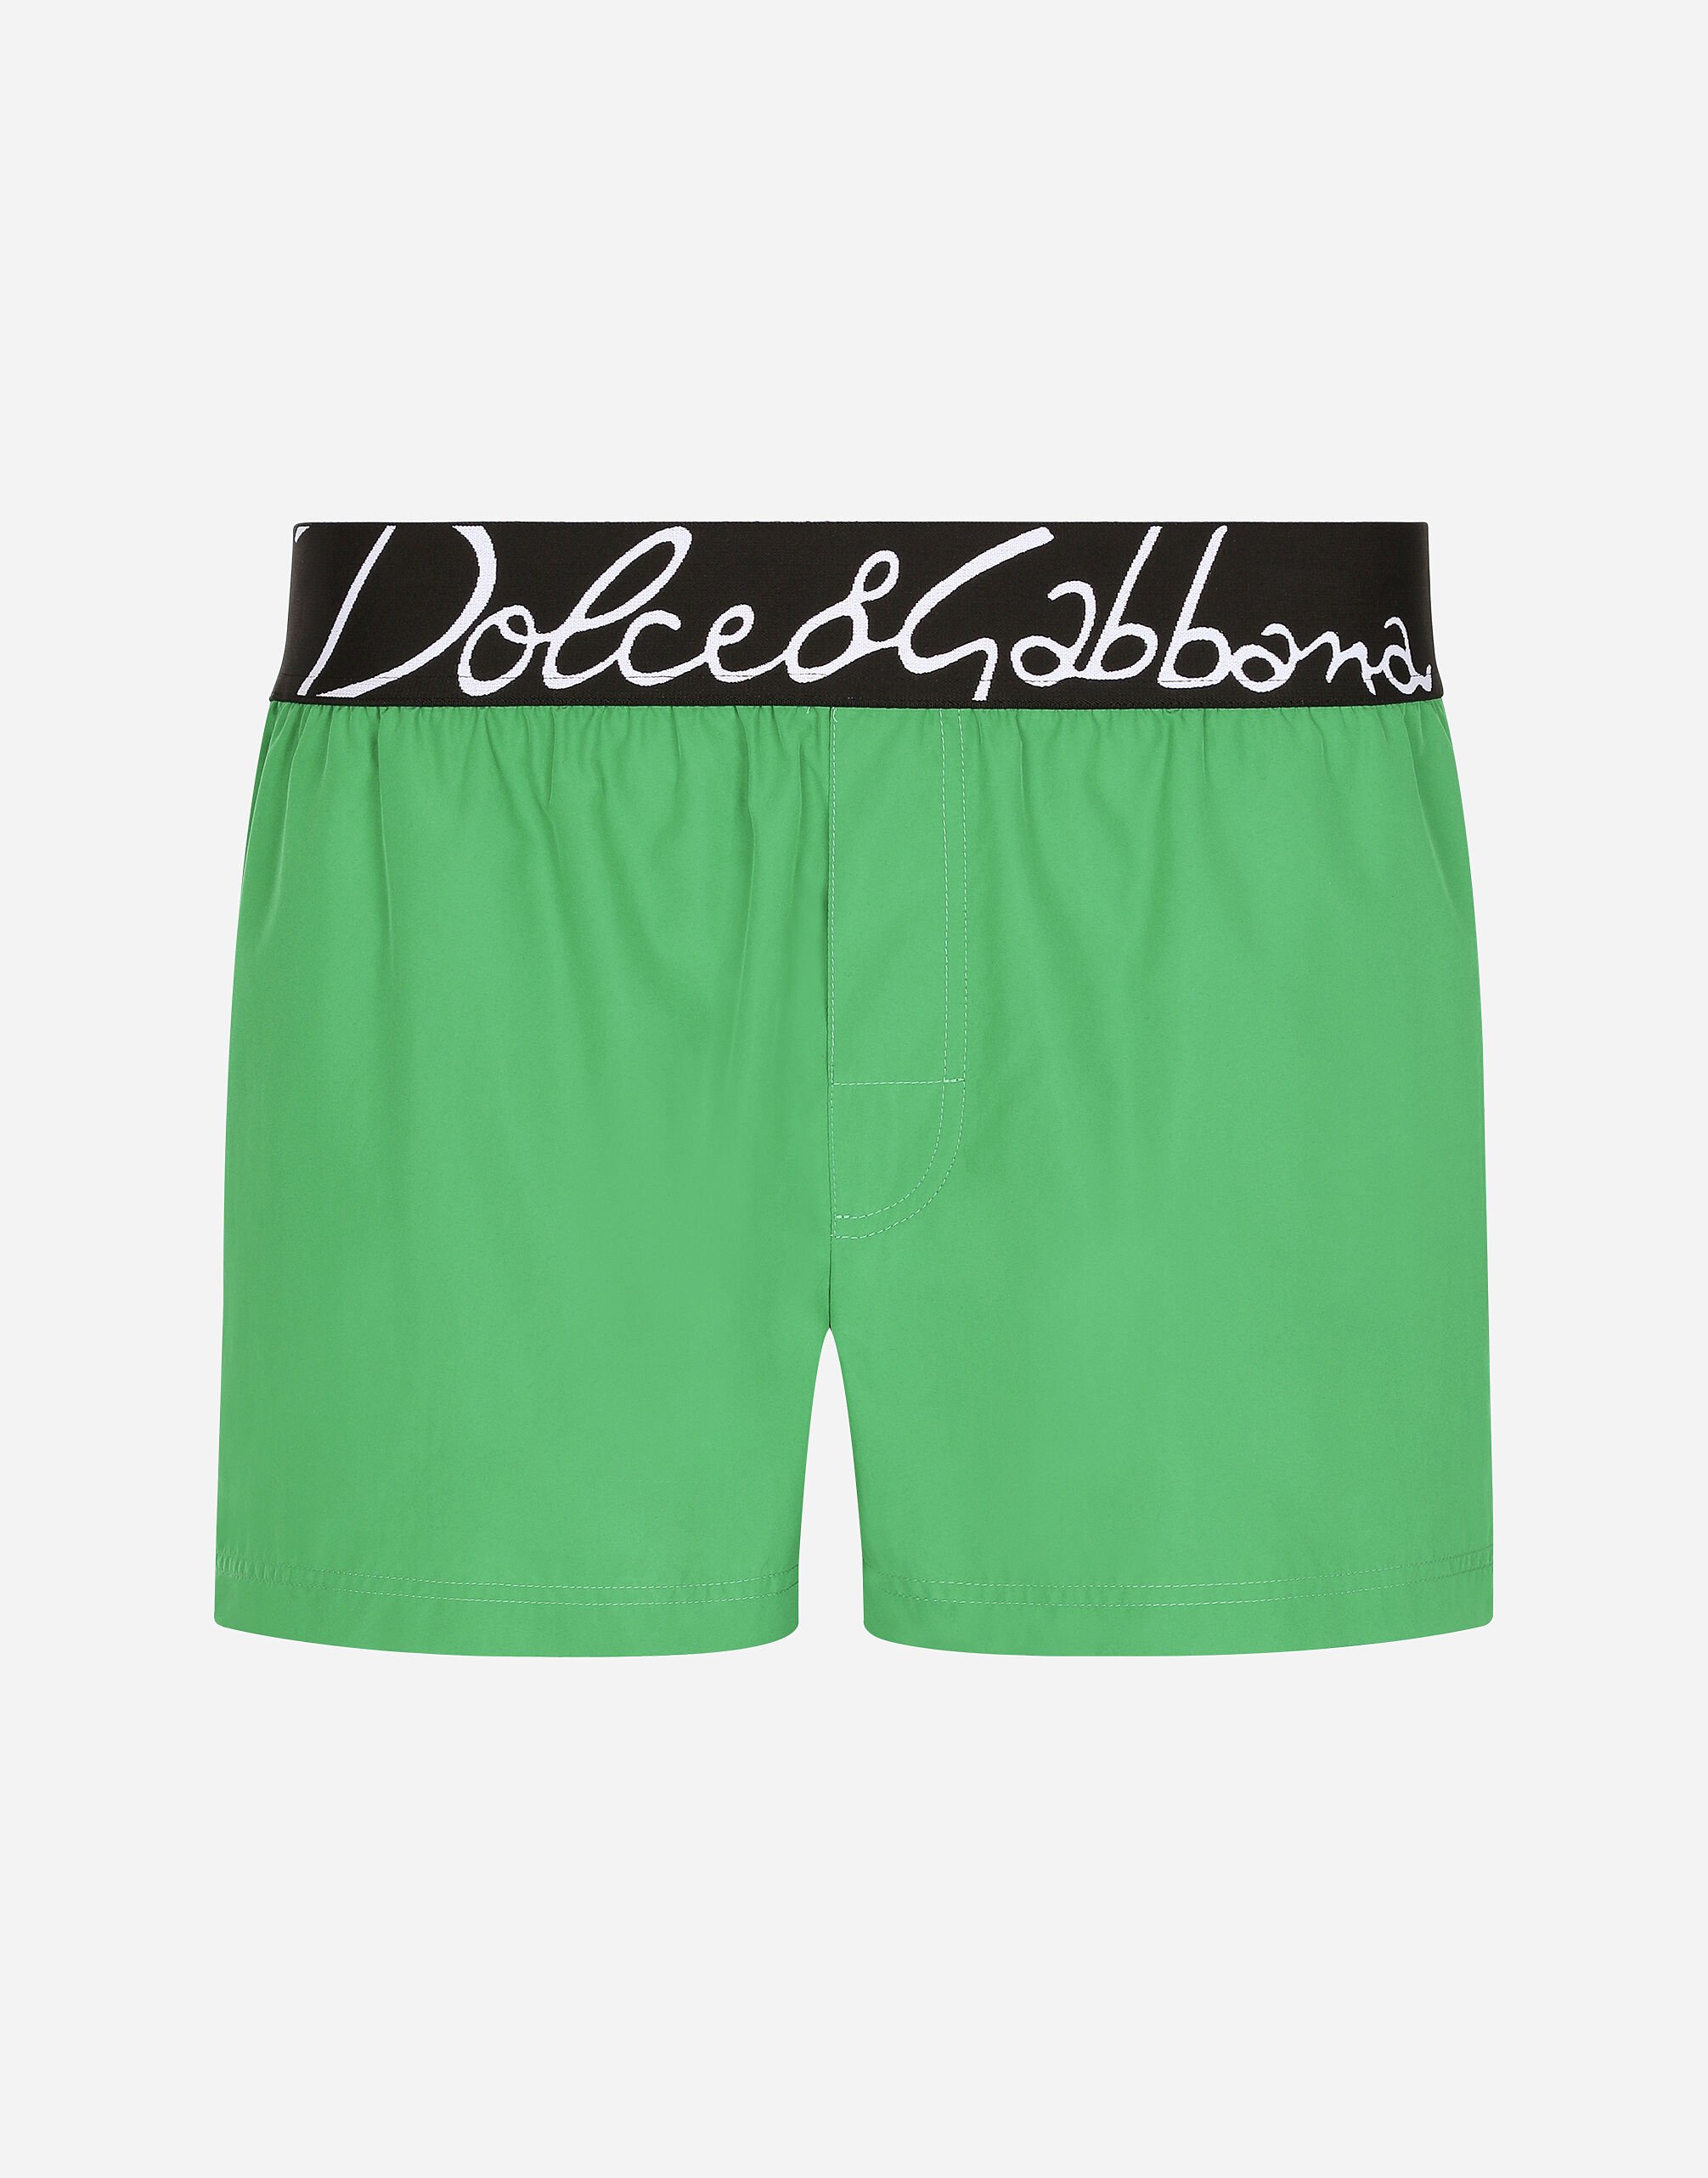 Dolce & Gabbana Short swim trunks with Dolce&Gabbana logo Azure GW0MATFU4LG